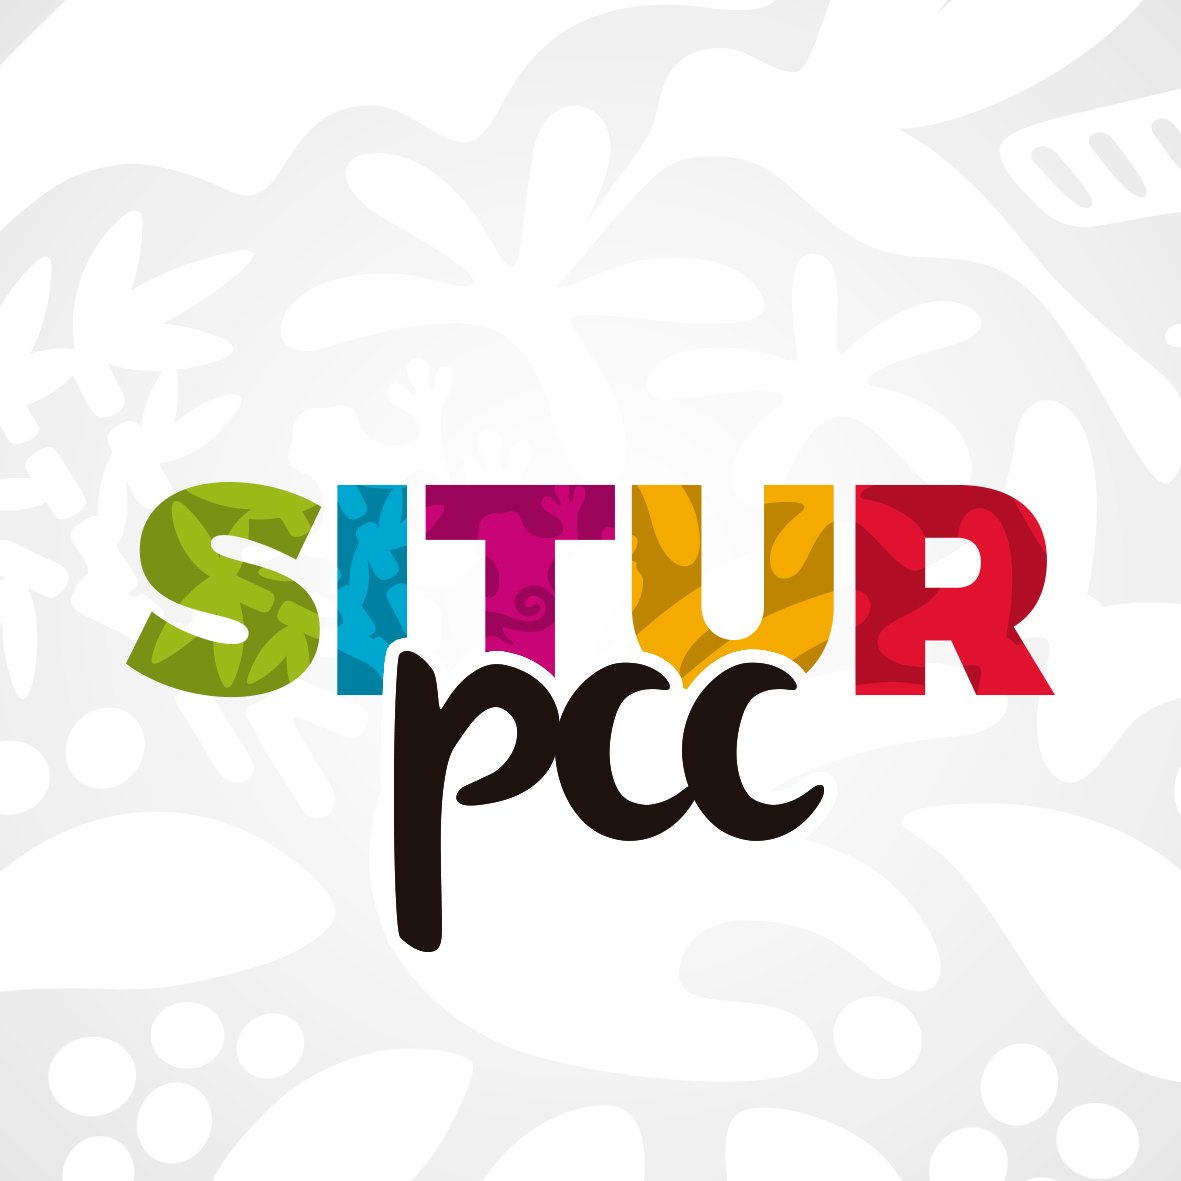 Sistema de Información Turística del Paisaje Cultural Cafetero.
#SiturPCC
#PaisajeCulturalCafetero